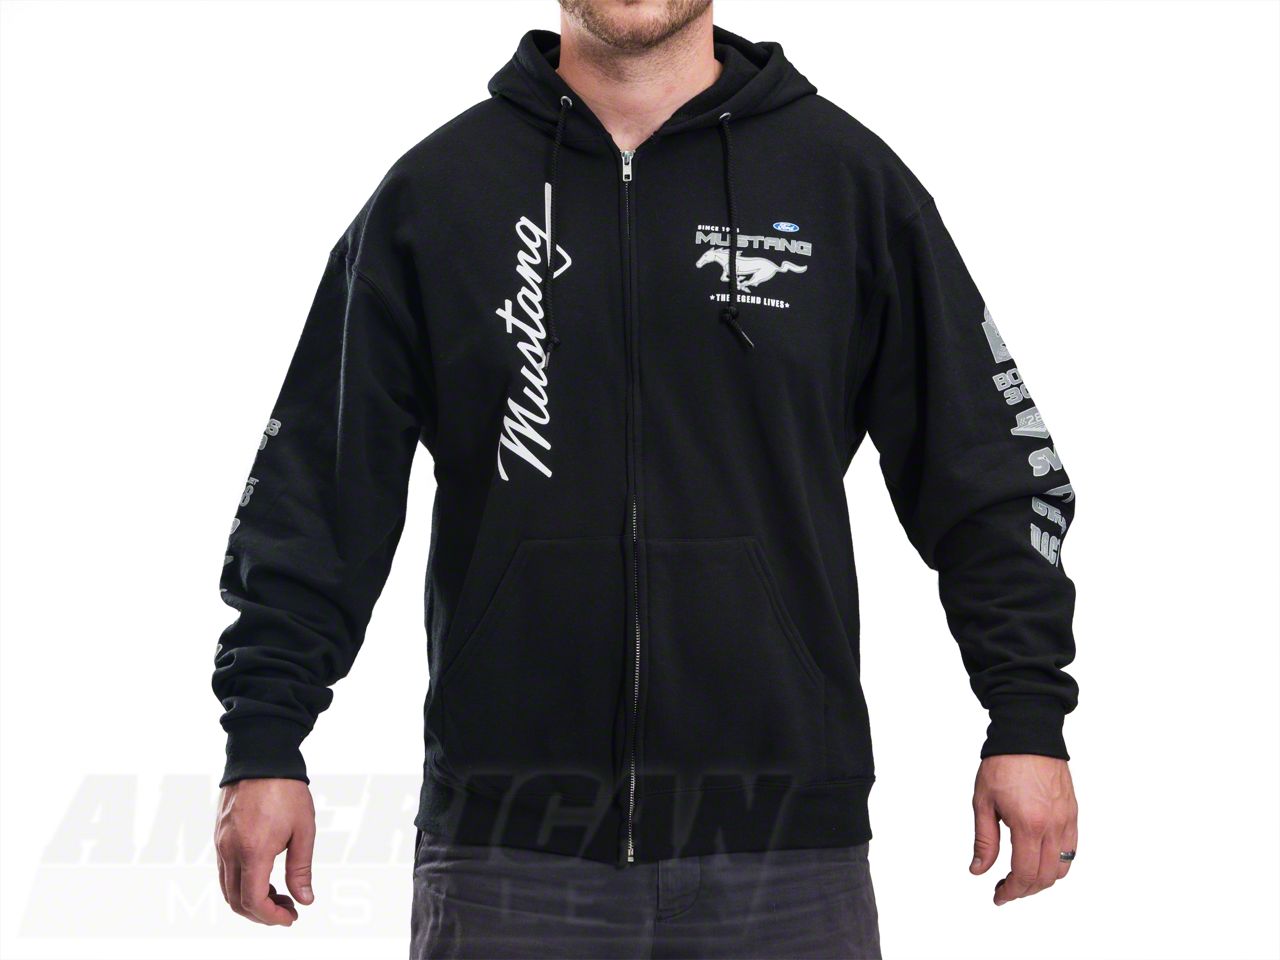 2009 Ford mustang college zip hoodie #8